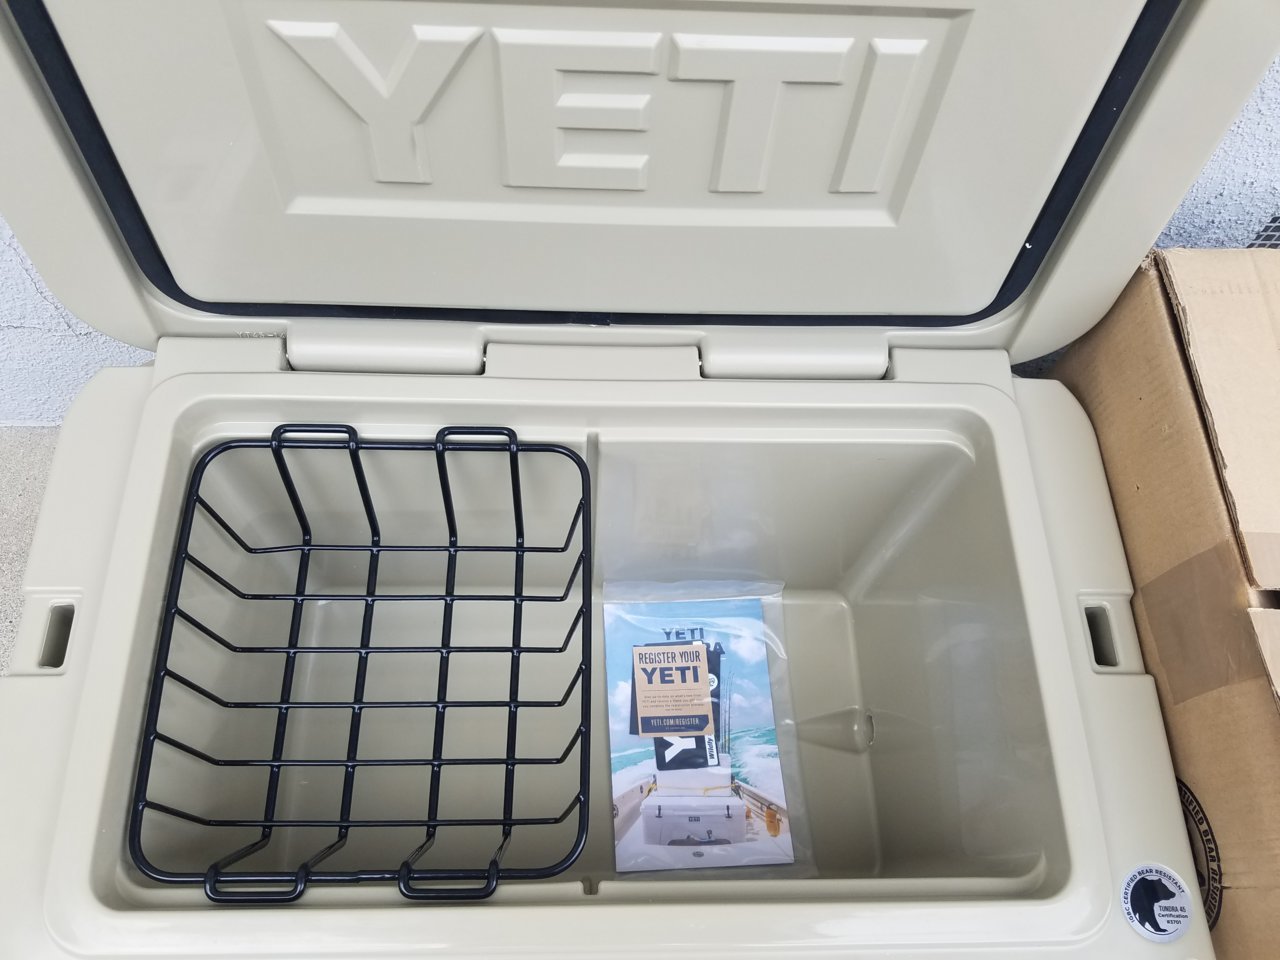 Yeti YT45 Tundra Series 45 Quart Cooler - White